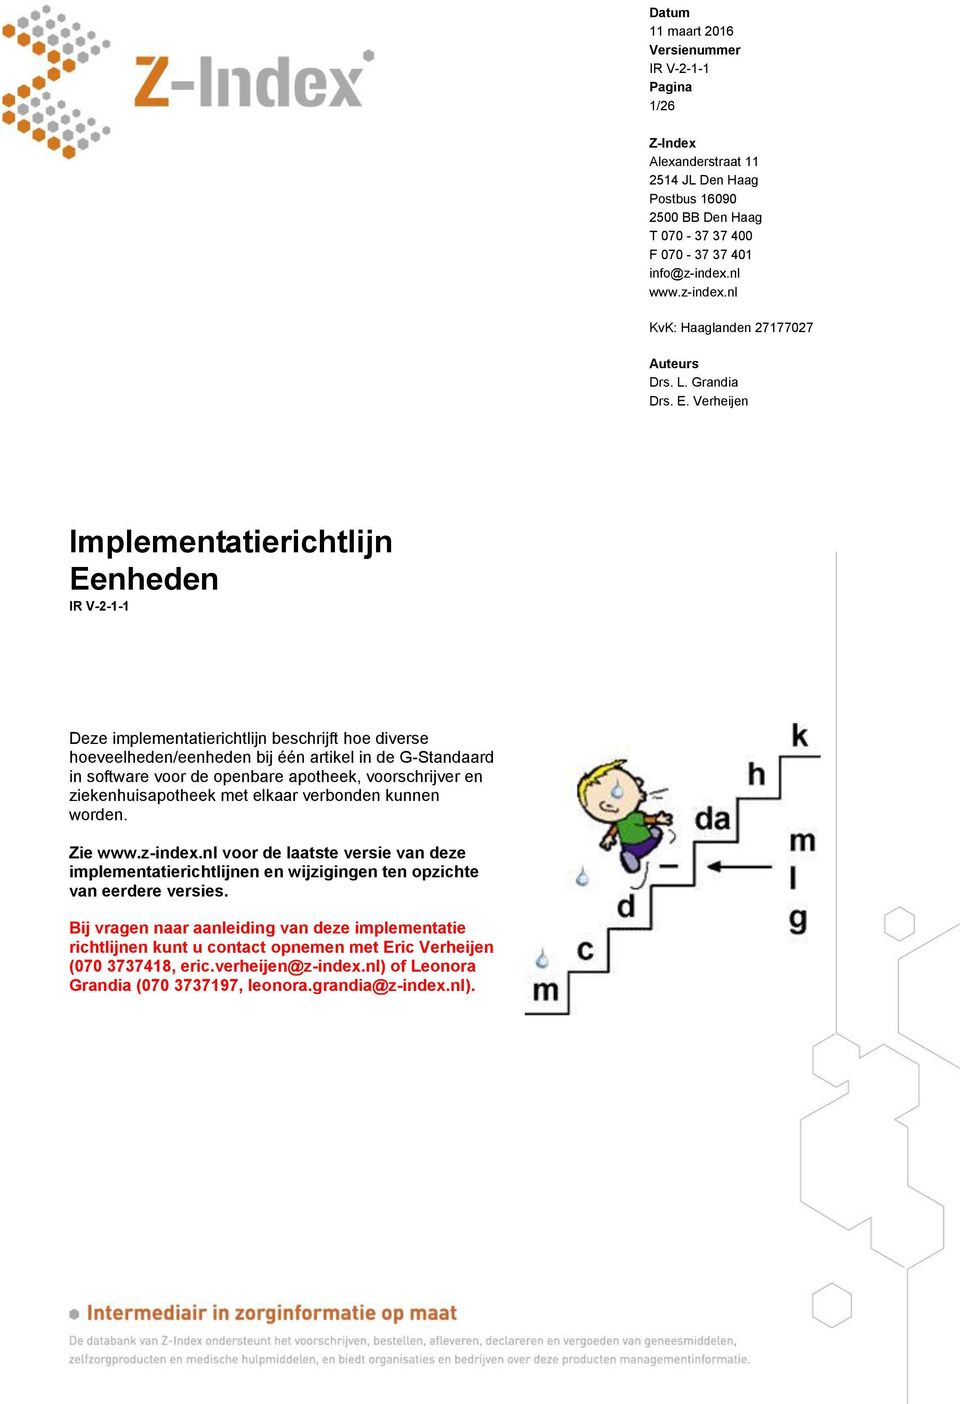 voorschrijver en ziekenhuisapotheek met elkaar verbonden kunnen worden. Zie www.z-index.nl voor de laatste versie van deze implementatierichtlijnen en wijzigingen ten opzichte van eerdere versies.